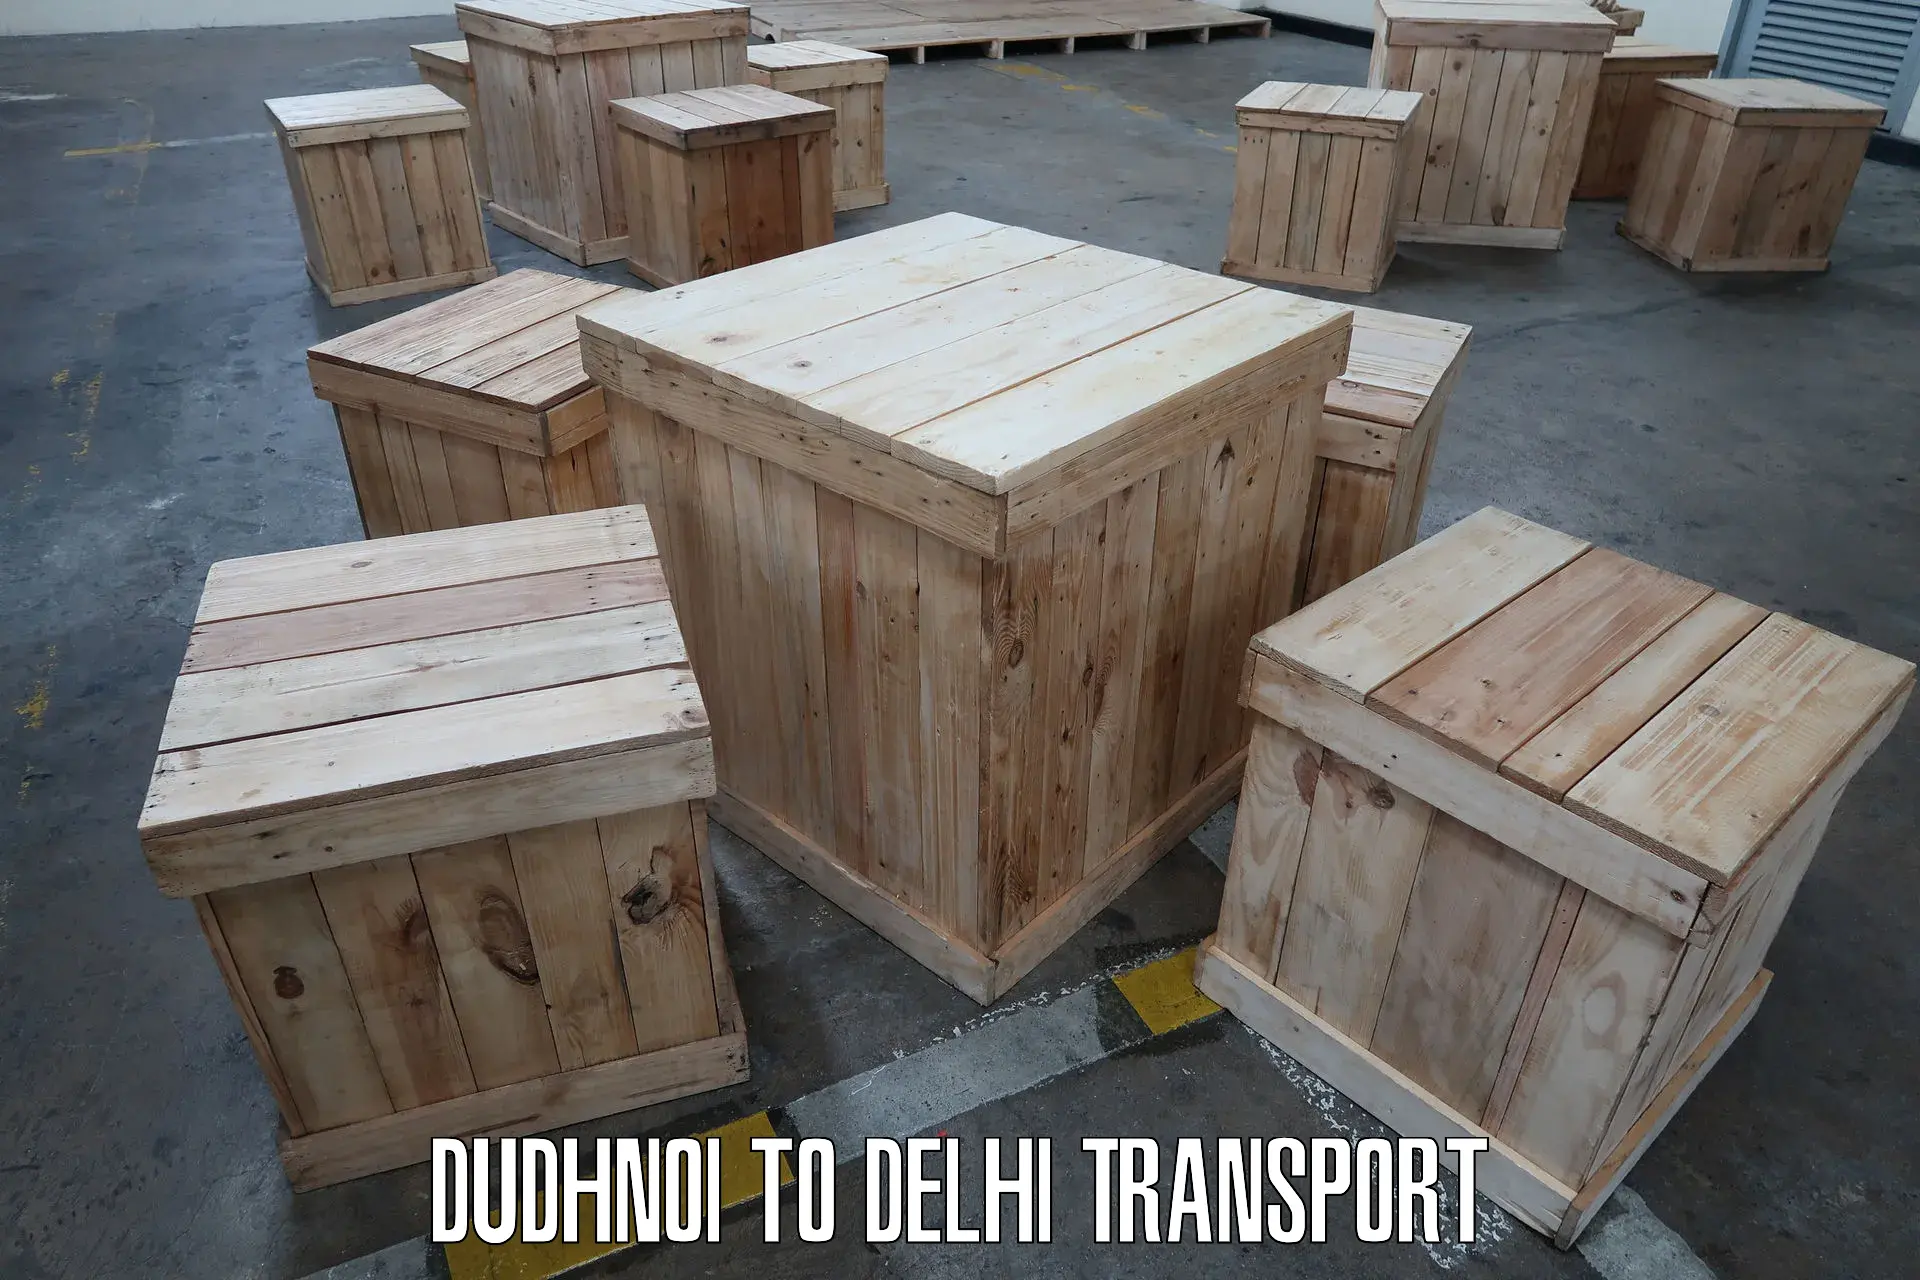 Transportation services Dudhnoi to Jamia Millia Islamia New Delhi